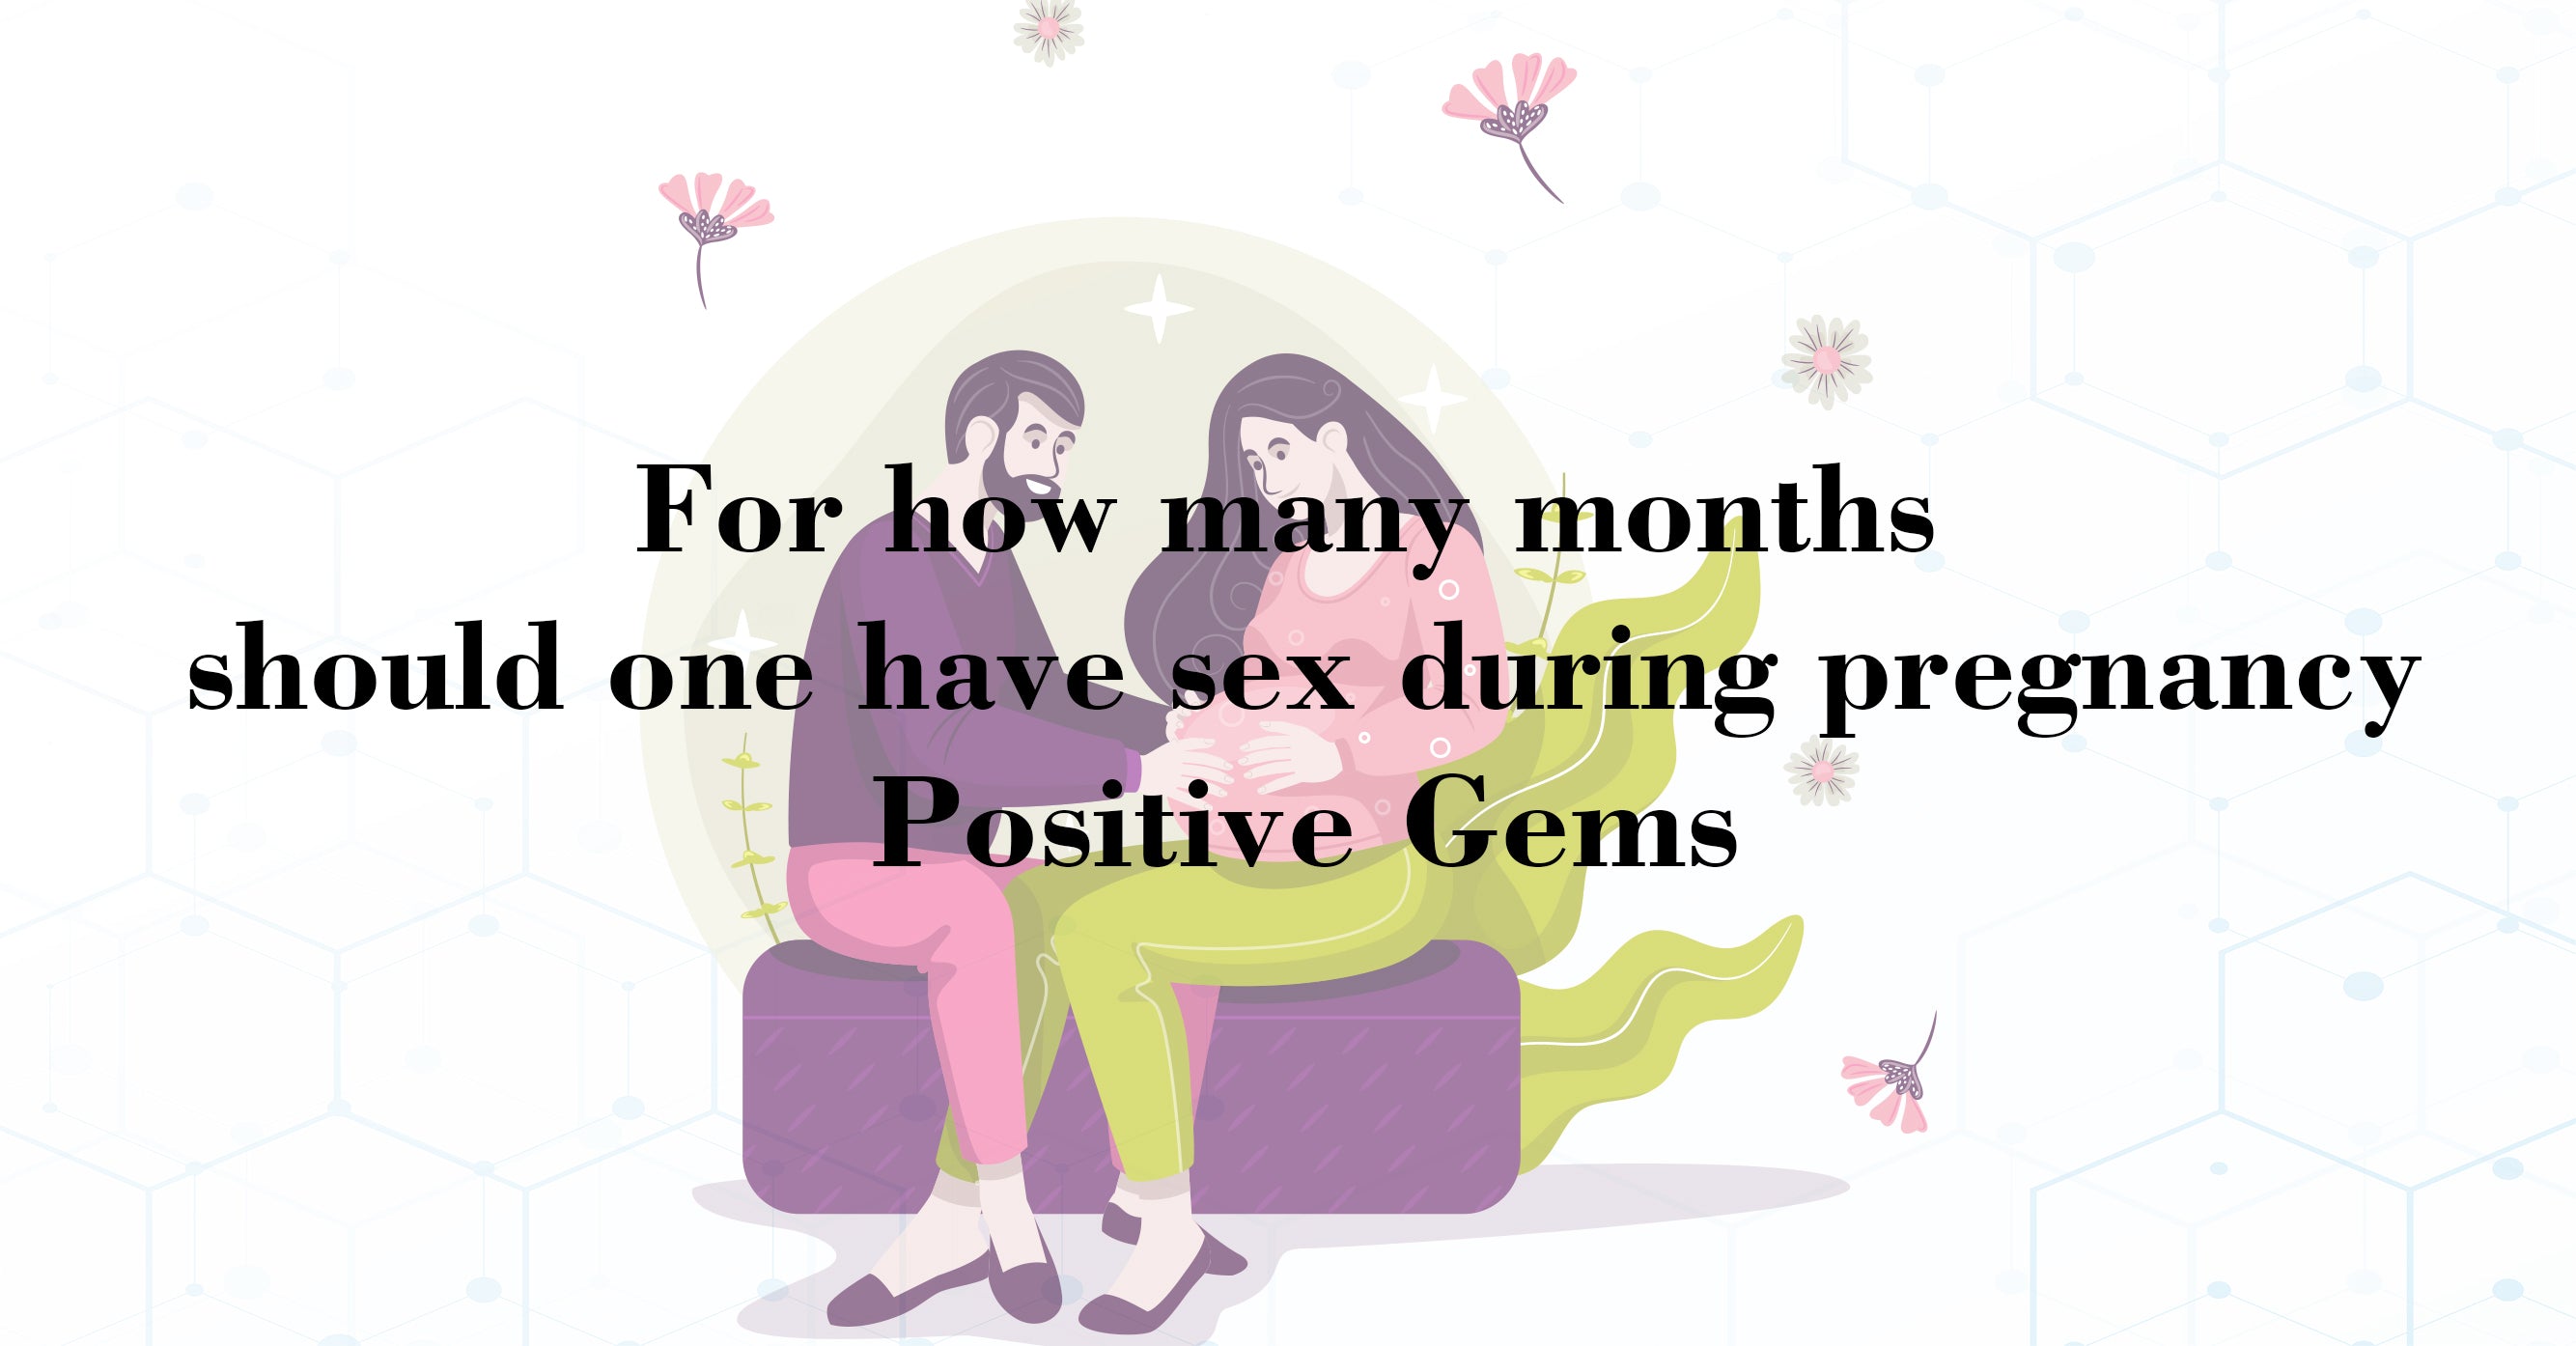 प्रेगनेंसी में कितने महीने तक संबंध बनाना चाहिए - Positive Gems